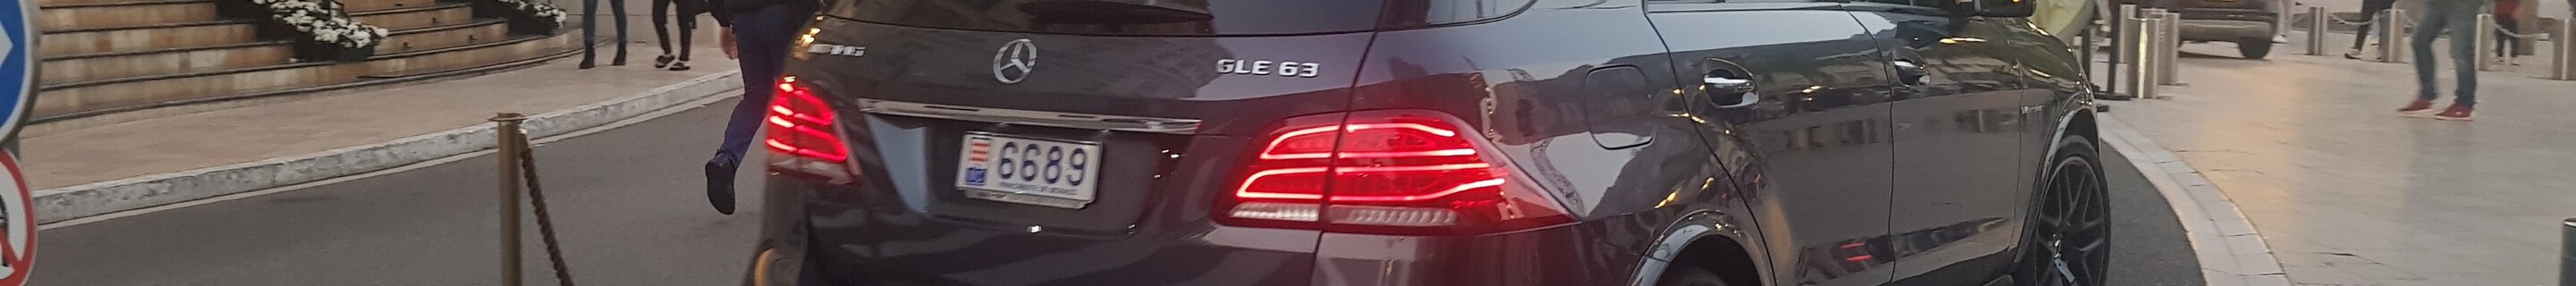 Mercedes-AMG GLE 63